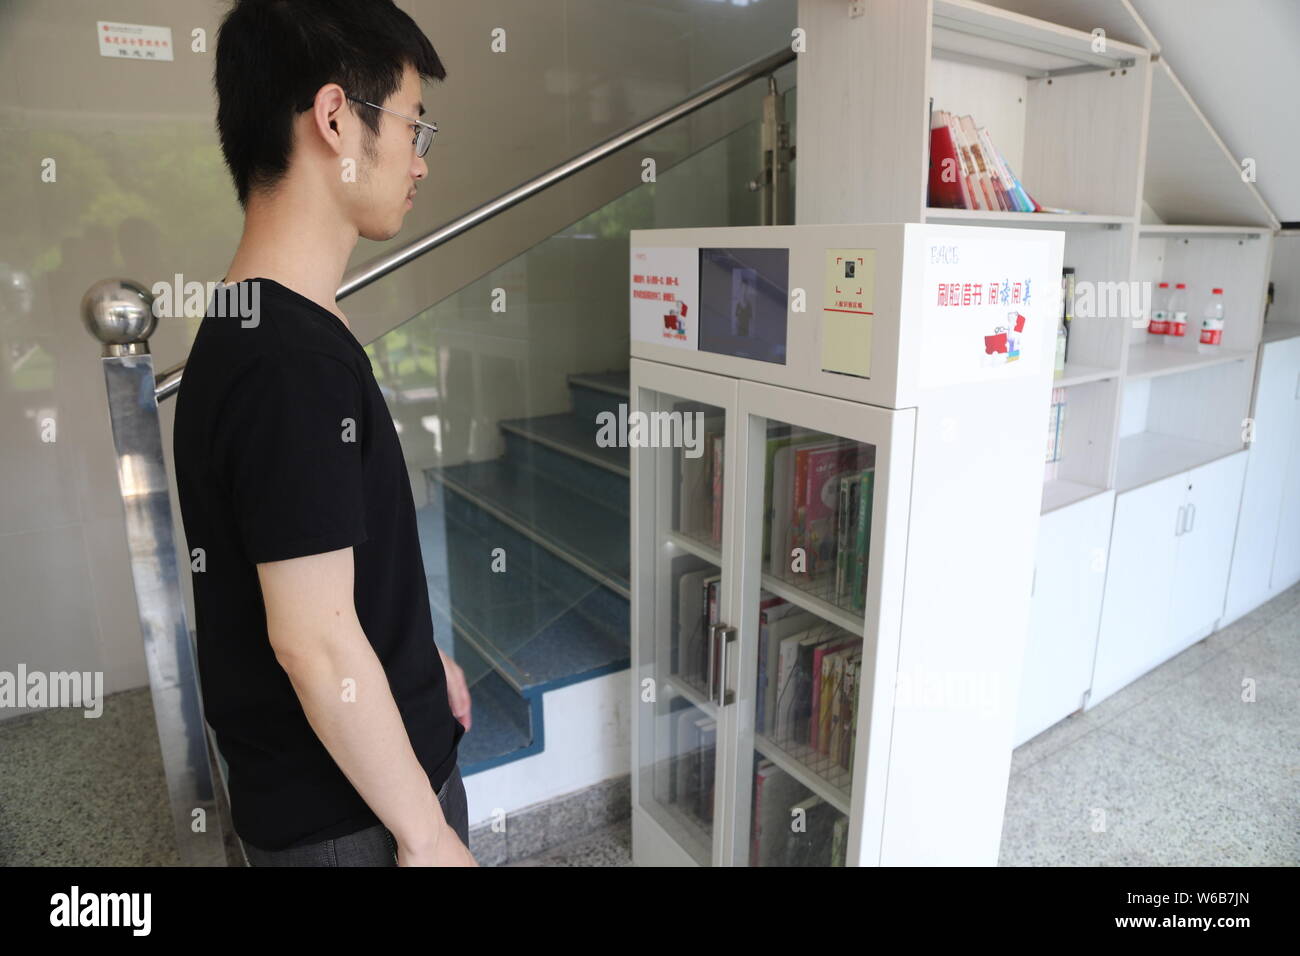 Uno studente prende in prestito libro mediante il riconoscimento del volto nella libreria in una scuola nella città di Hangzhou, a est della Cina di provincia dello Zhejiang, 15 maggio 2018. Il classr Foto Stock